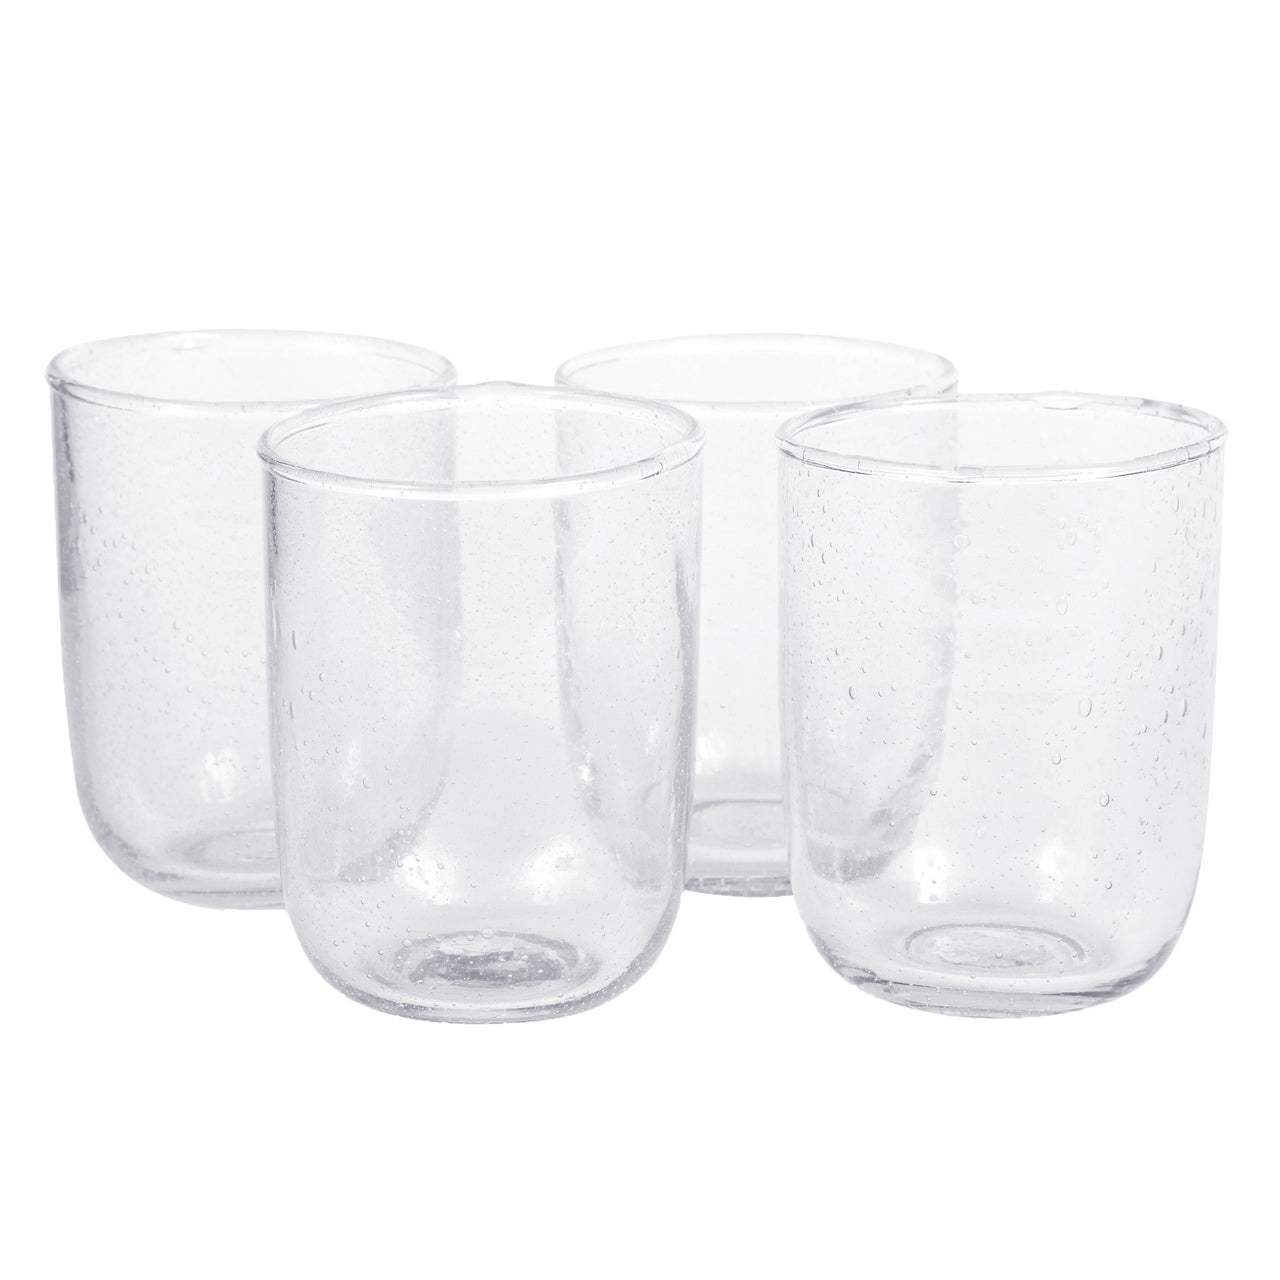 Short Drinking Glasses (set of 4)